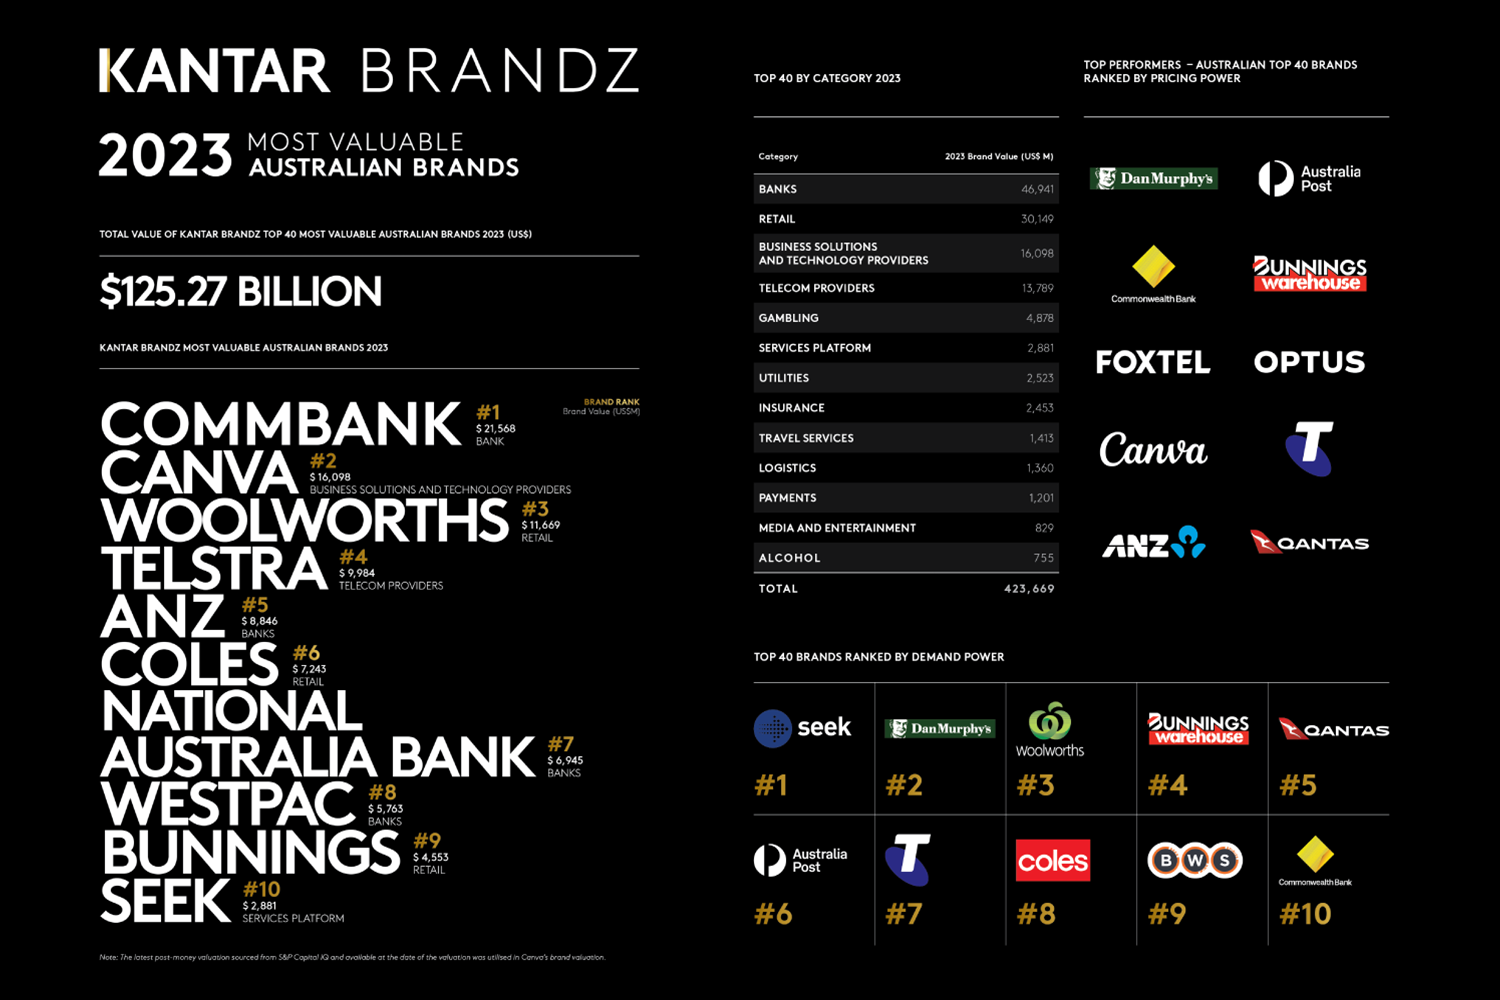 Kantar BrandZ™ Most Valuable Global Brands 2022